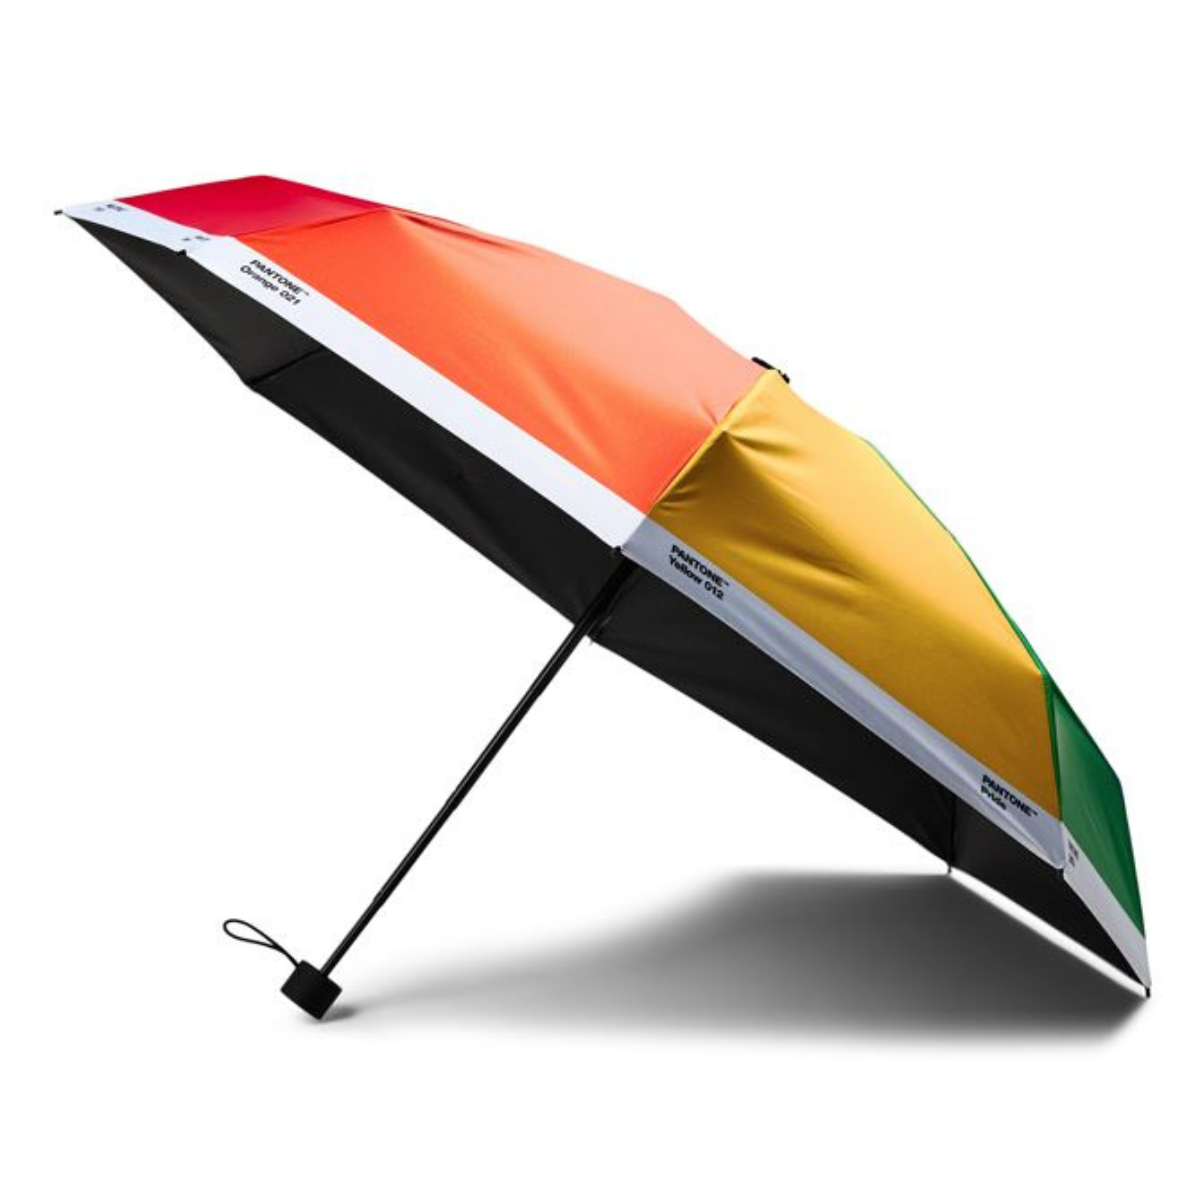 Pantone Pride Umbrella in Case